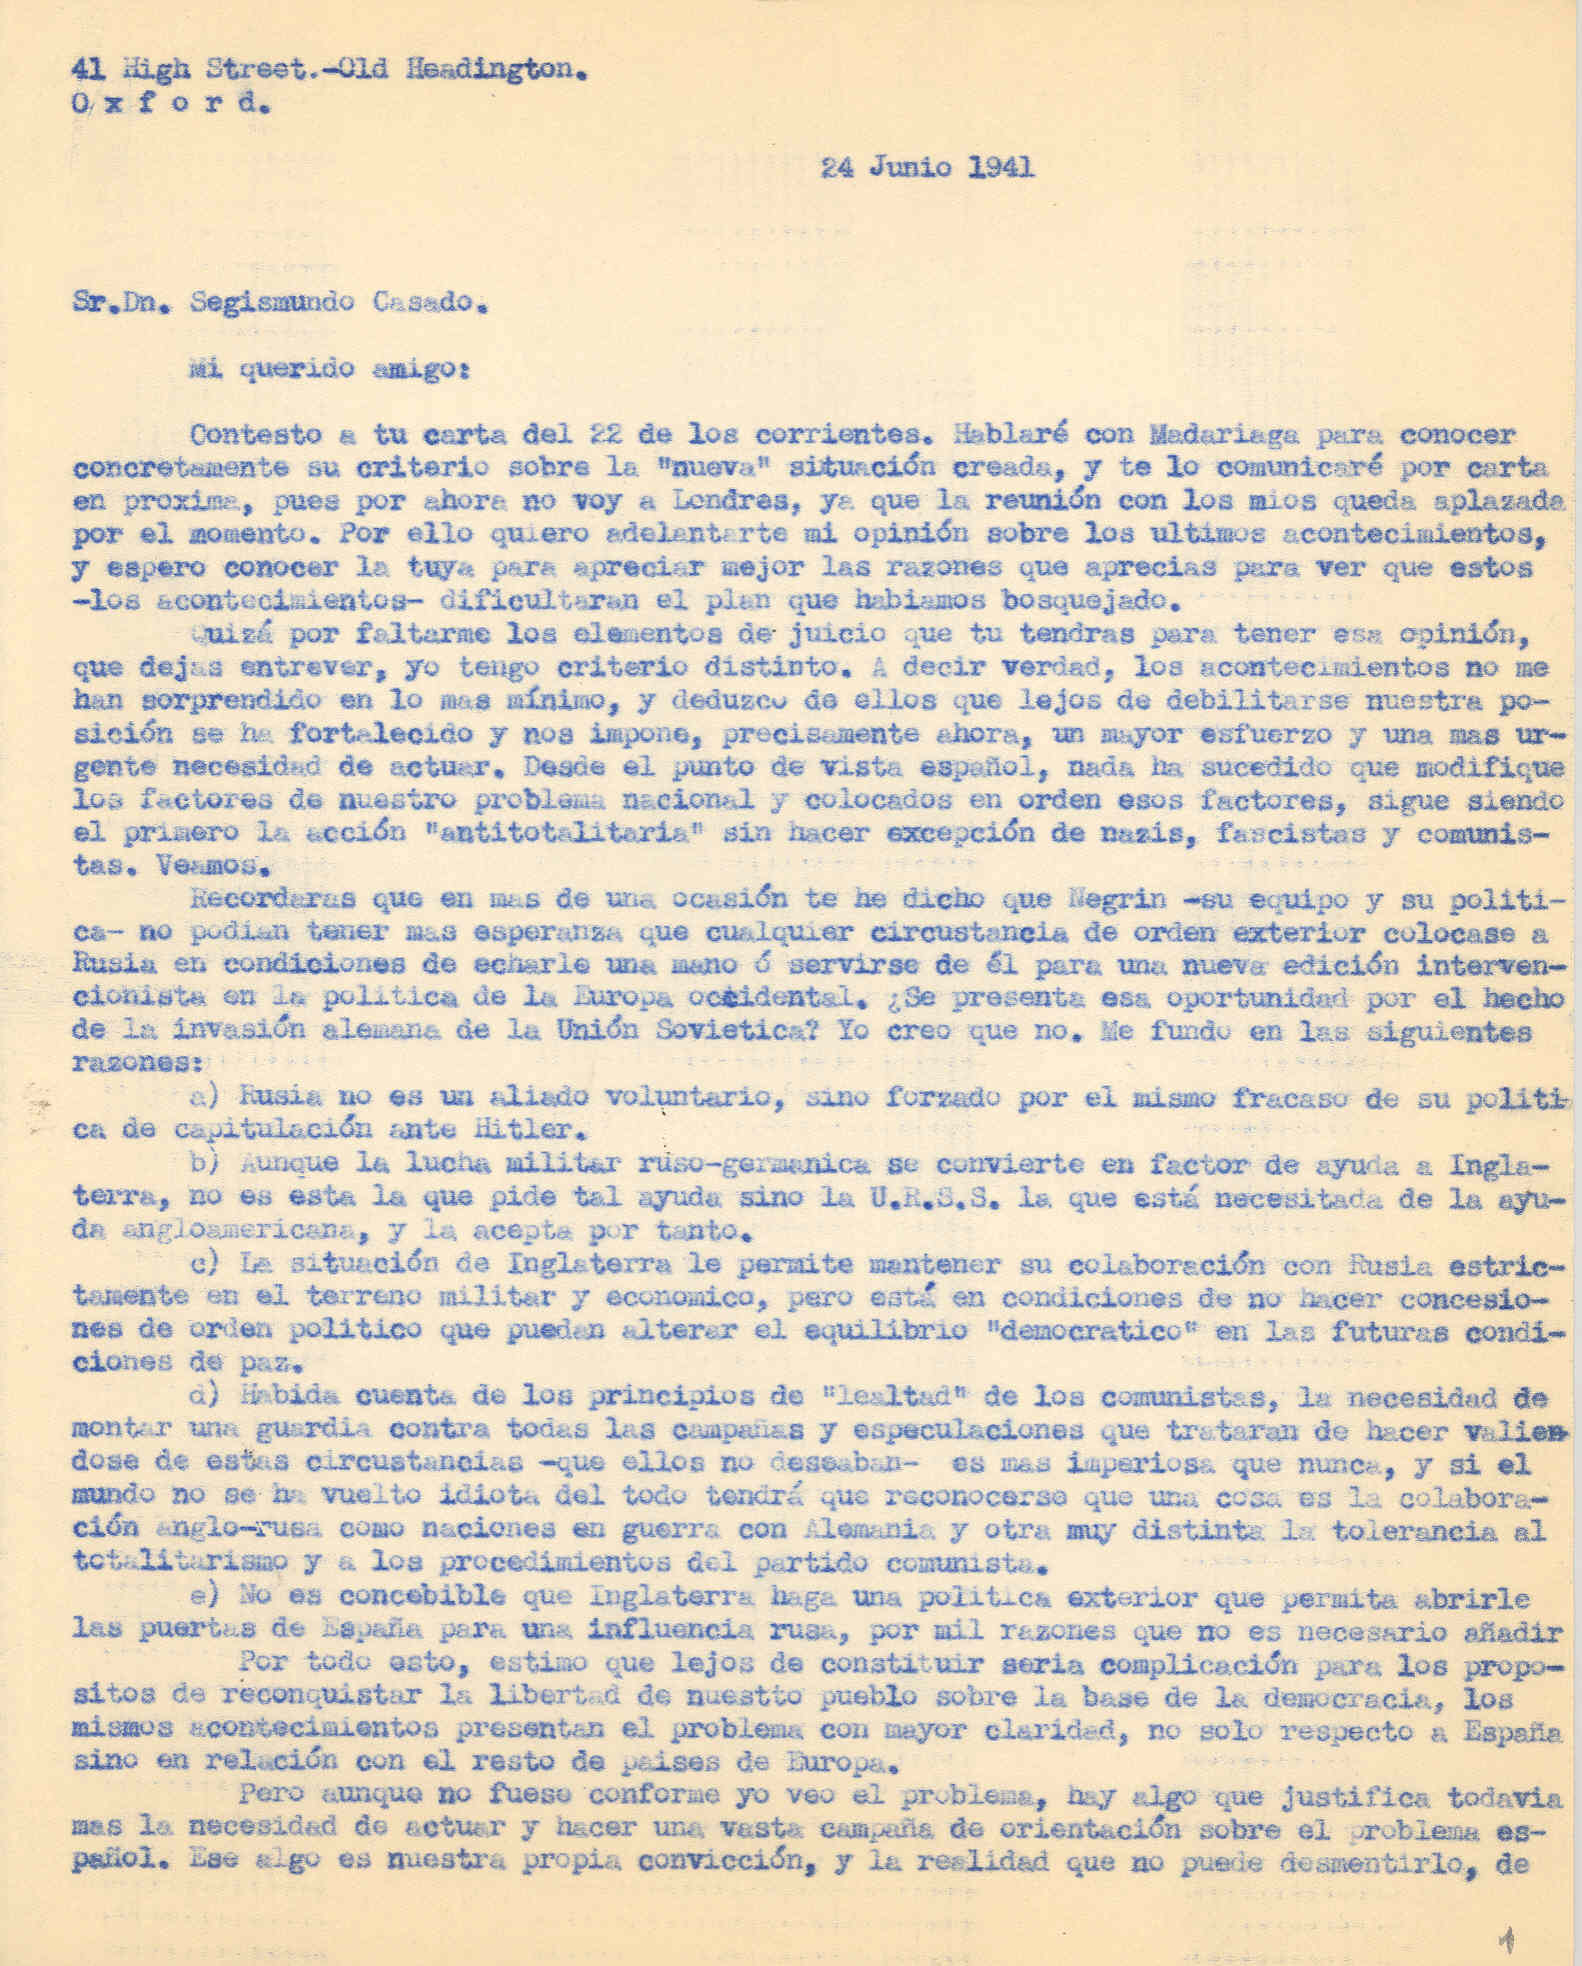 Carta a Segismundo Casado en la que habla de la colaboración anglo-rusa como naciones en la guerra con Alemania y del totalitarismo.